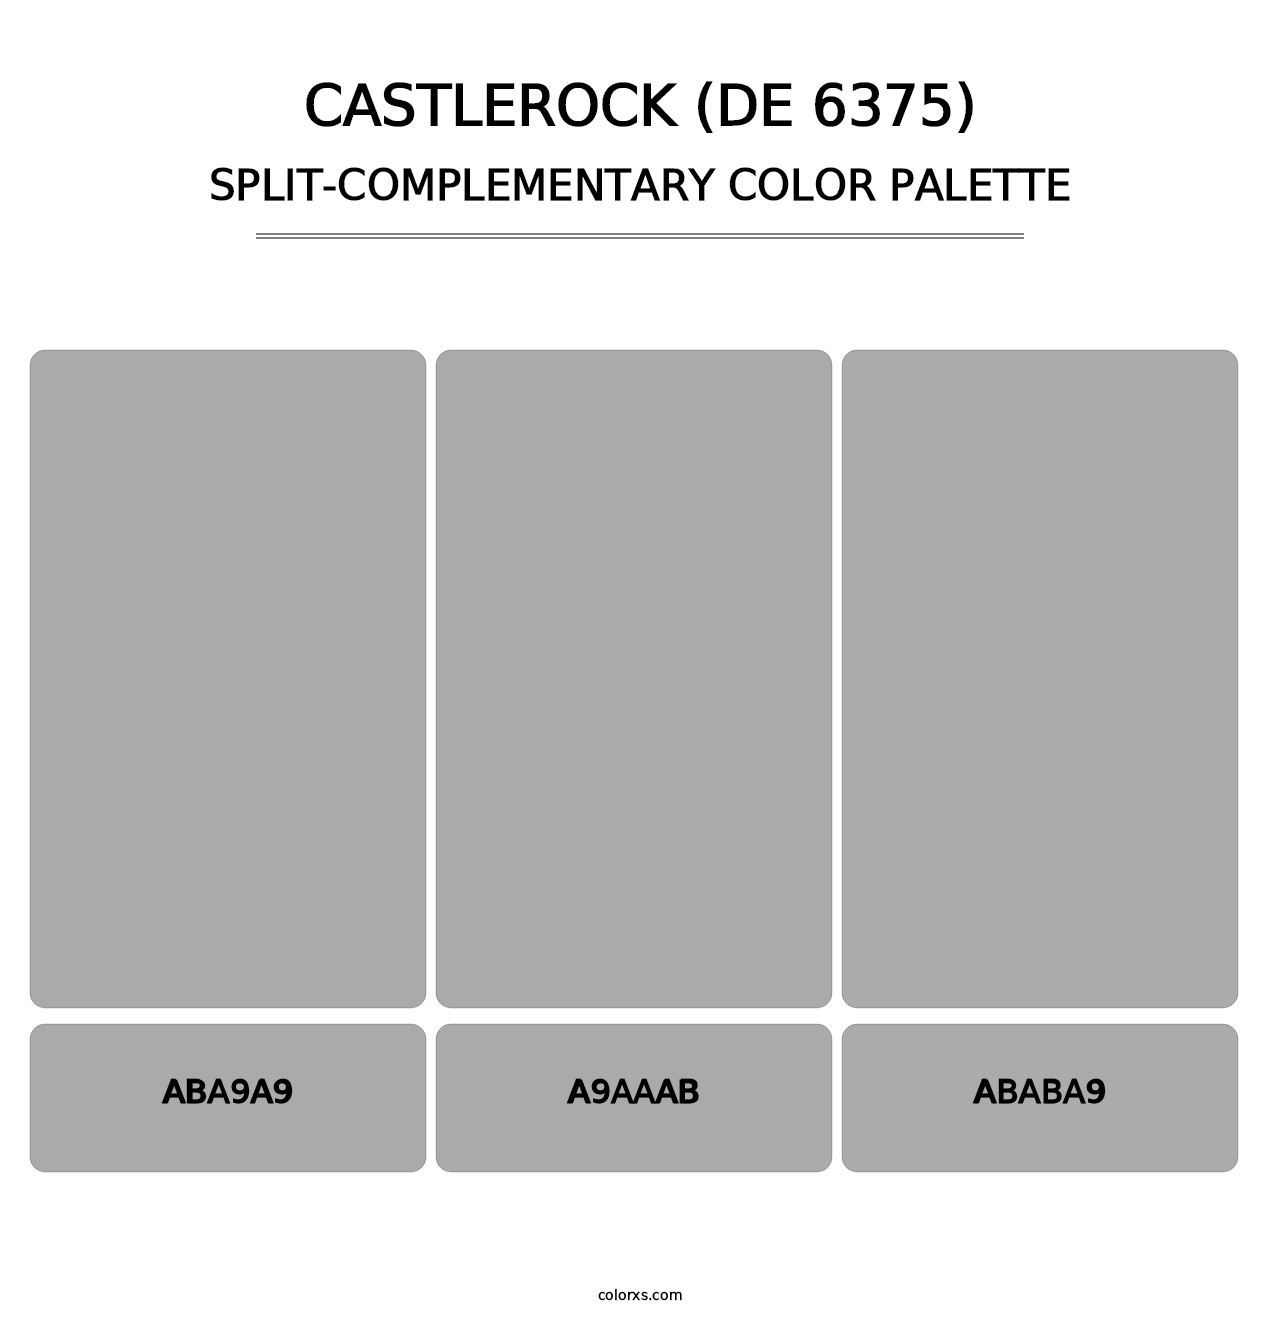 Castlerock (DE 6375) - Split-Complementary Color Palette